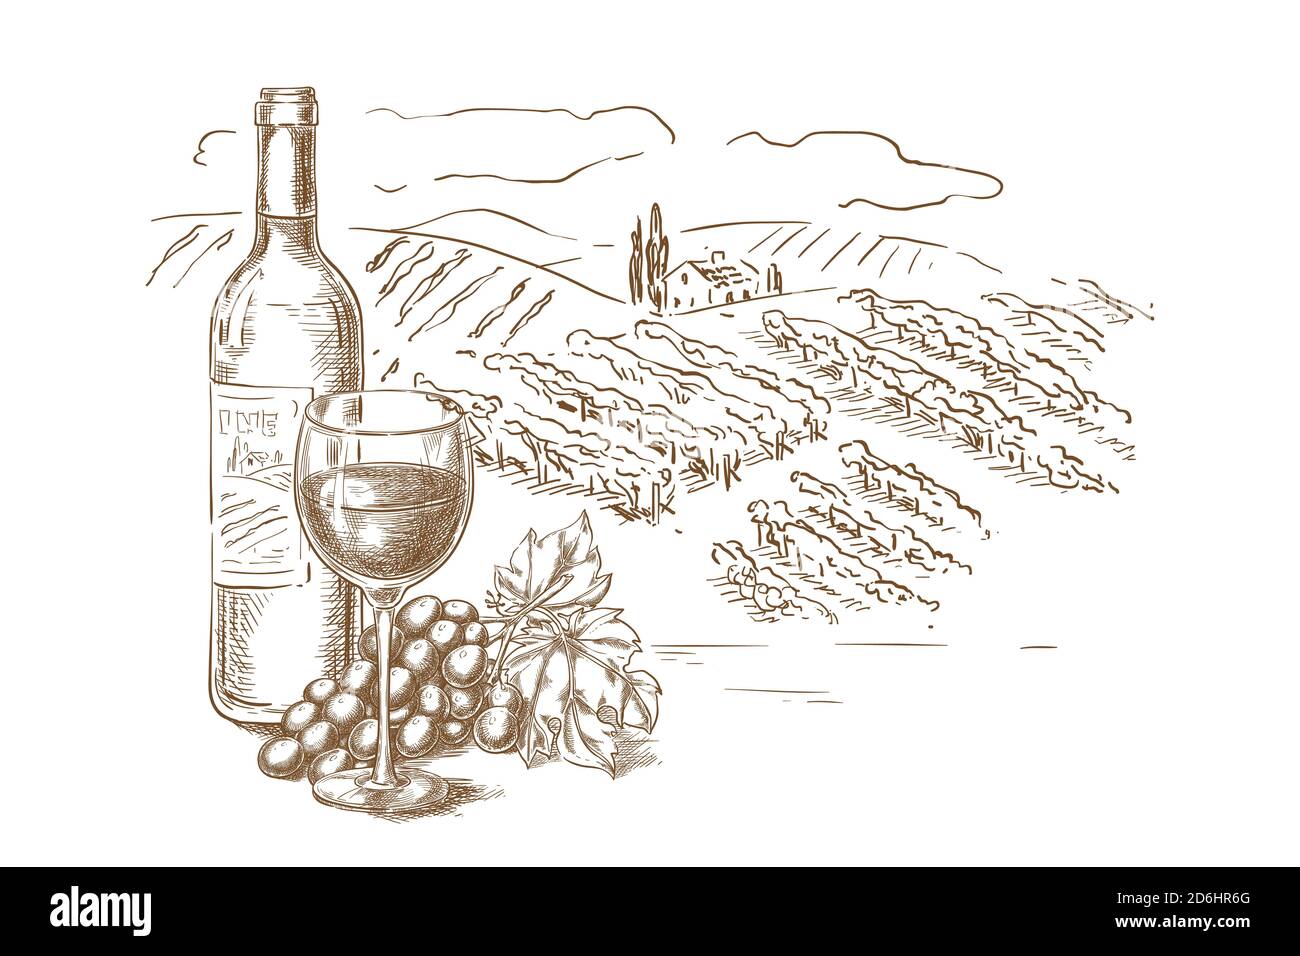 Illustrazione vettoriale dello schizzo del paesaggio di vigneto. Bottiglia di vino rosso, bicchieri, vite d'uva, elementi disegnati a mano per la progettazione di etichette. Illustrazione Vettoriale